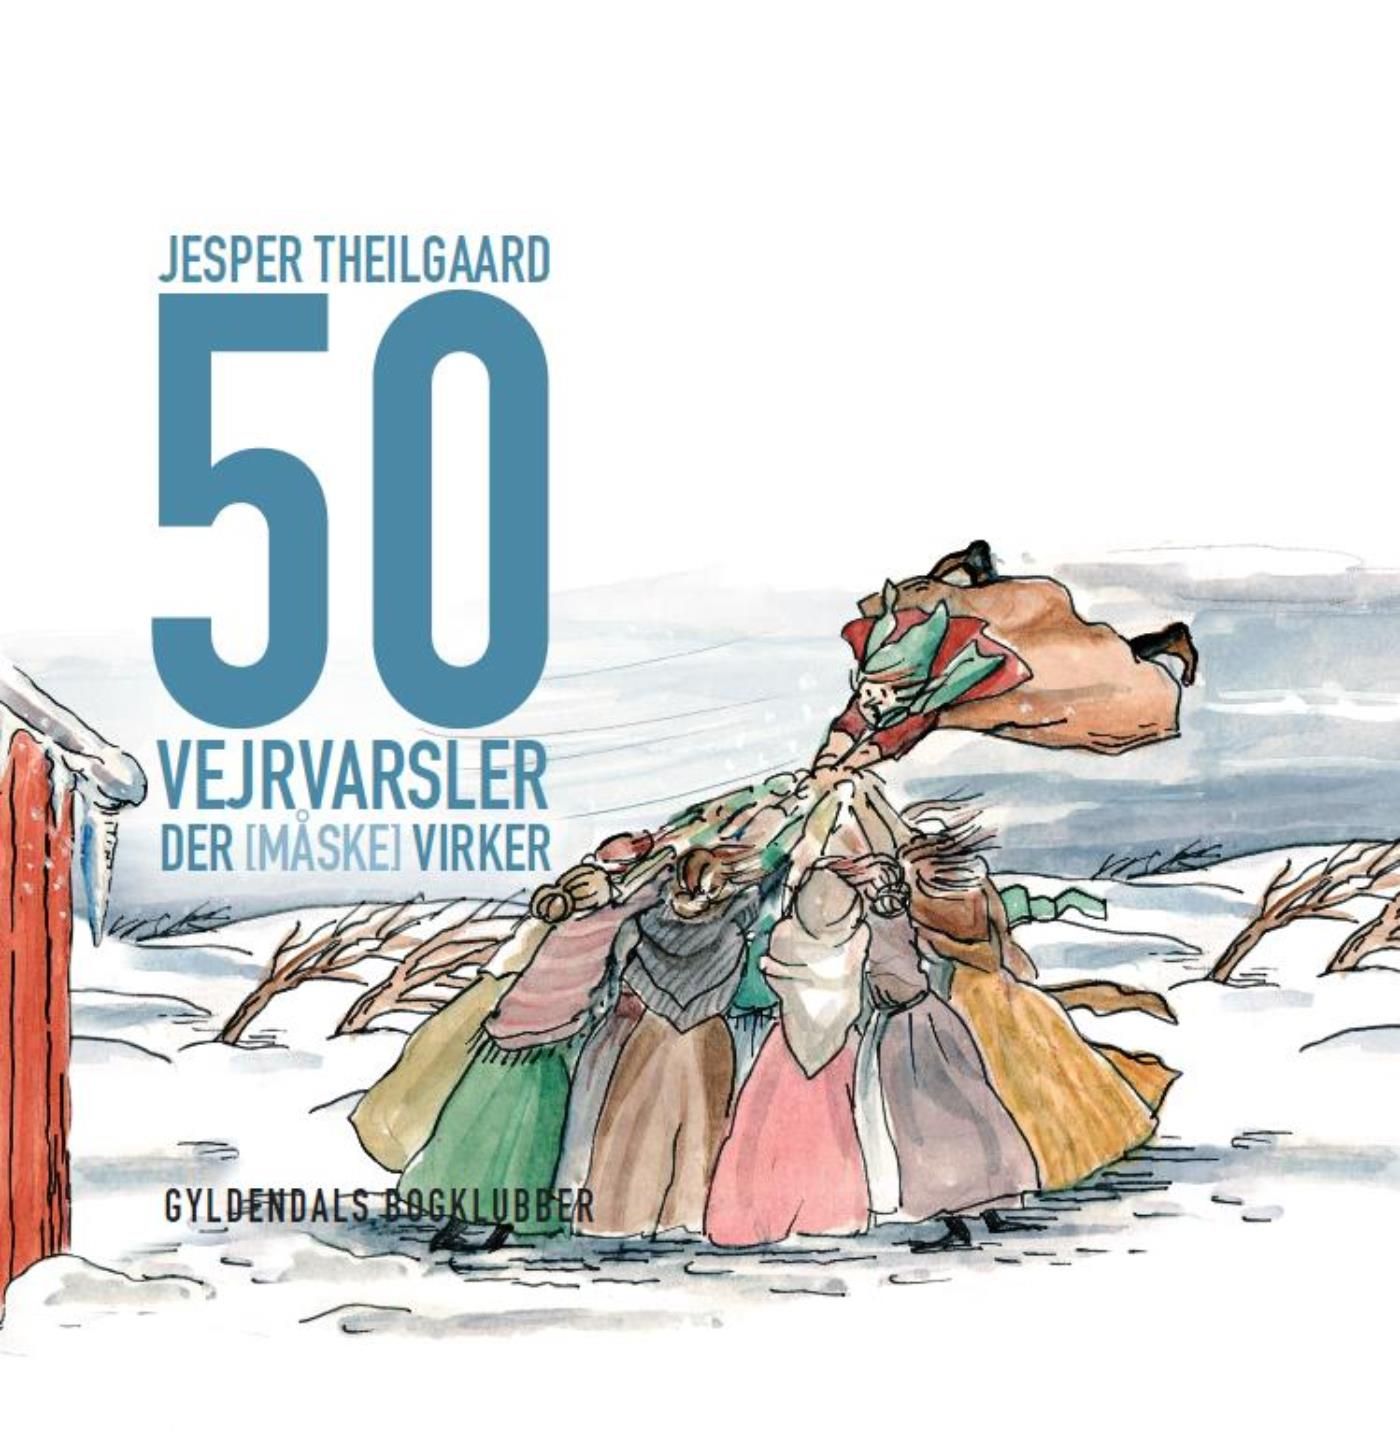 50 vejrvarsler der [måske] virker, eBook by Jesper Theilgaard